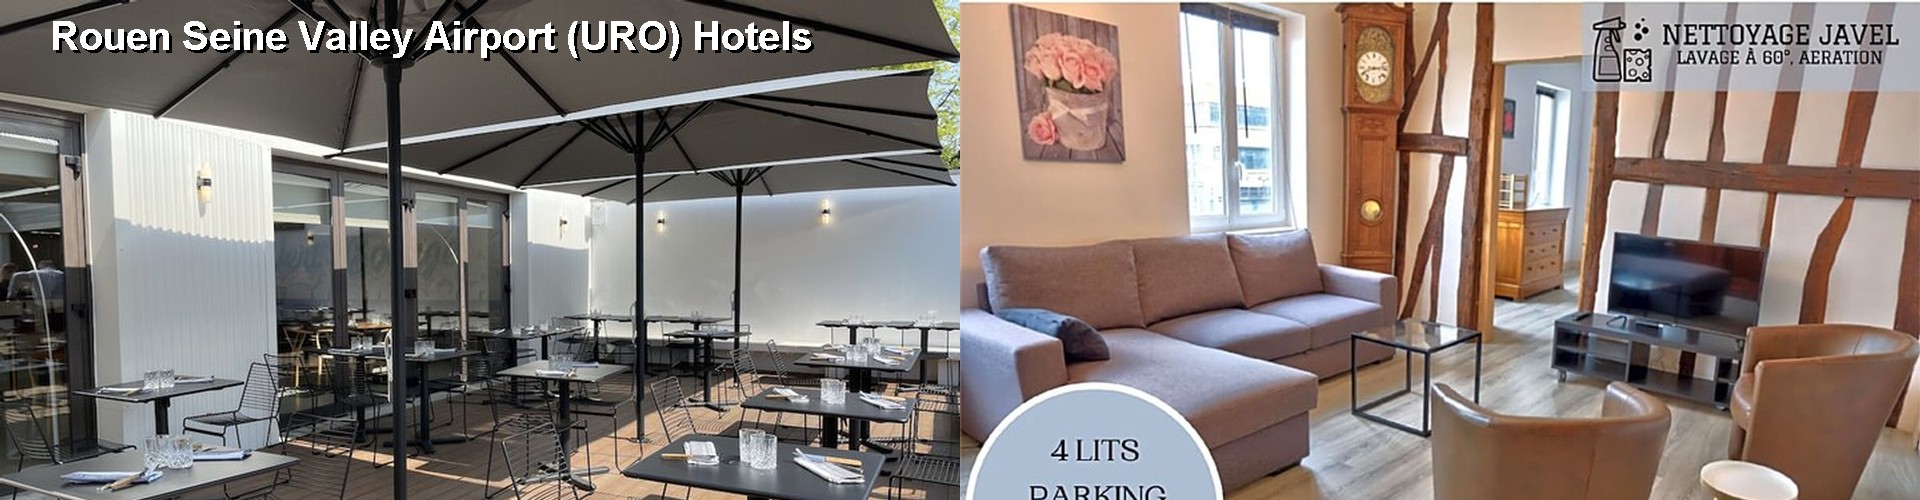 5 Best Hotels near Rouen Seine Valley Airport (URO)